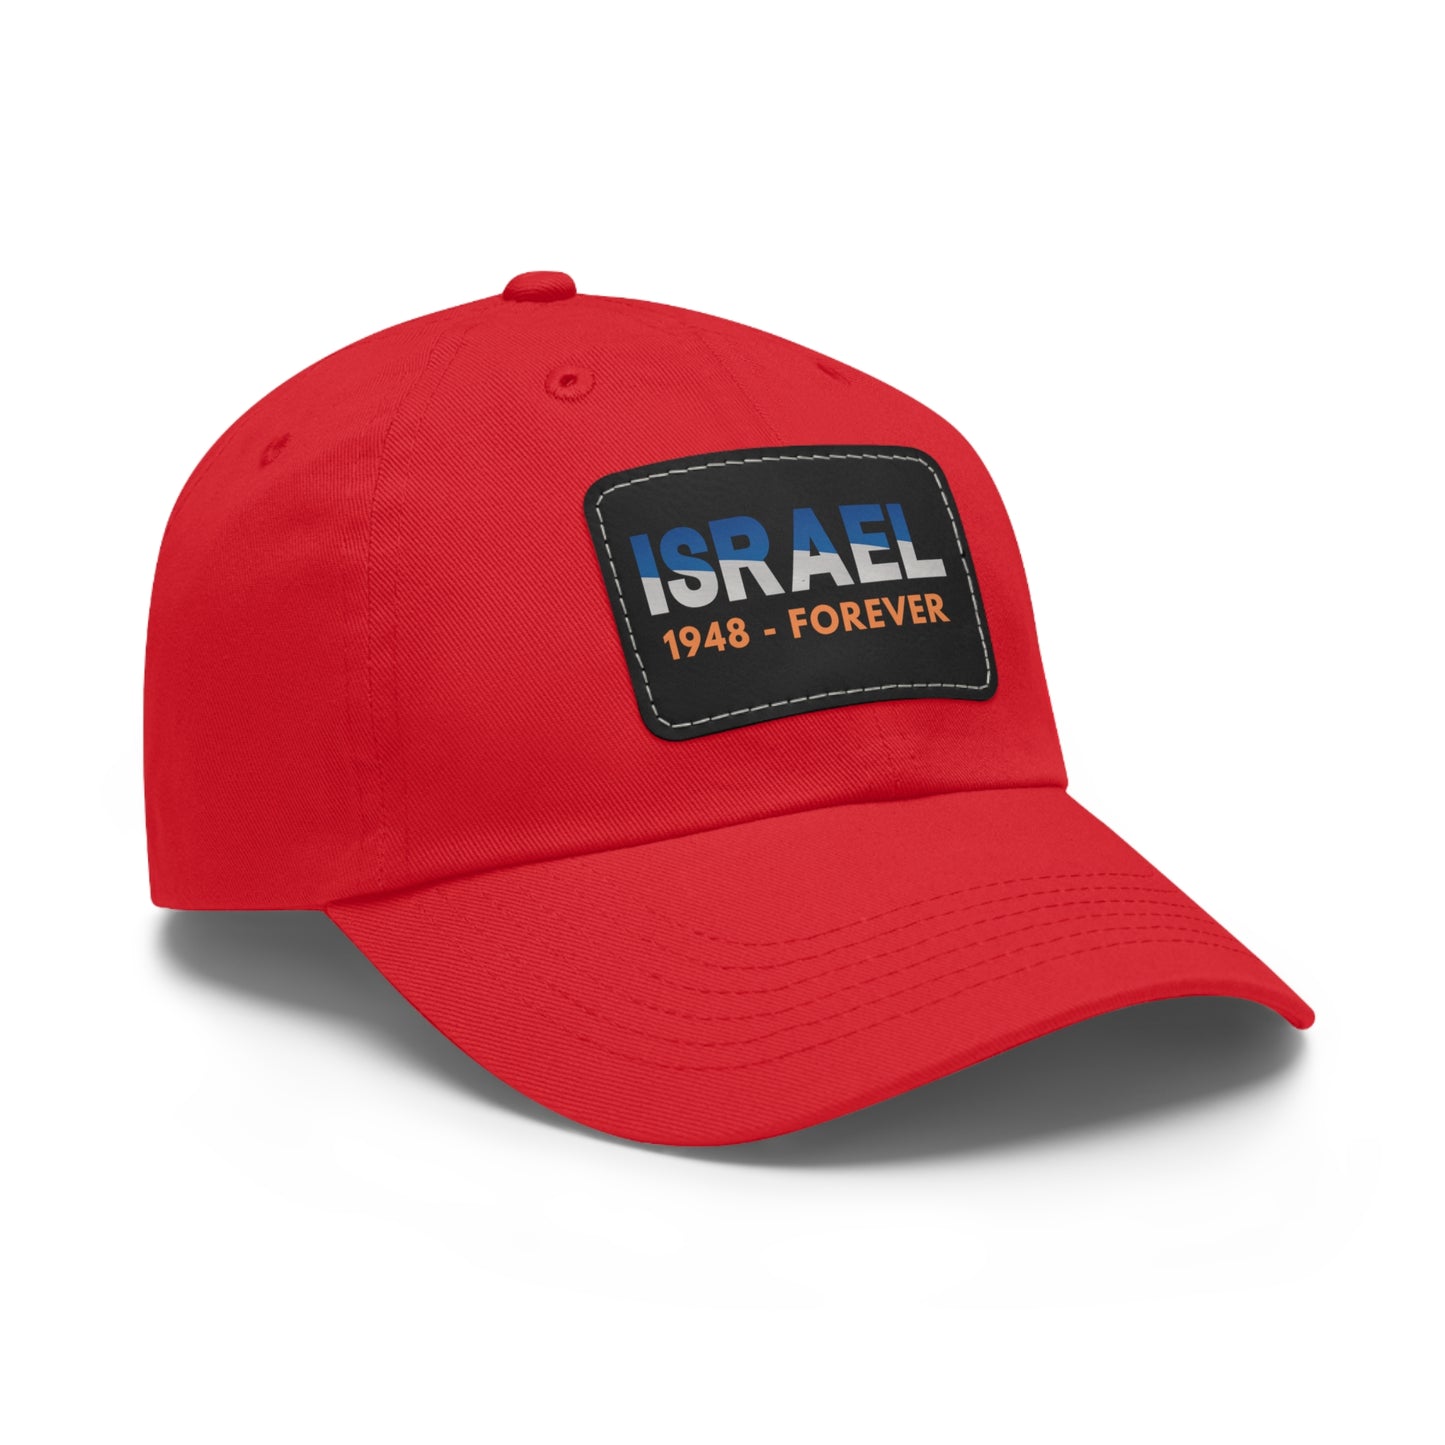 Israel 1948-Forever Hat